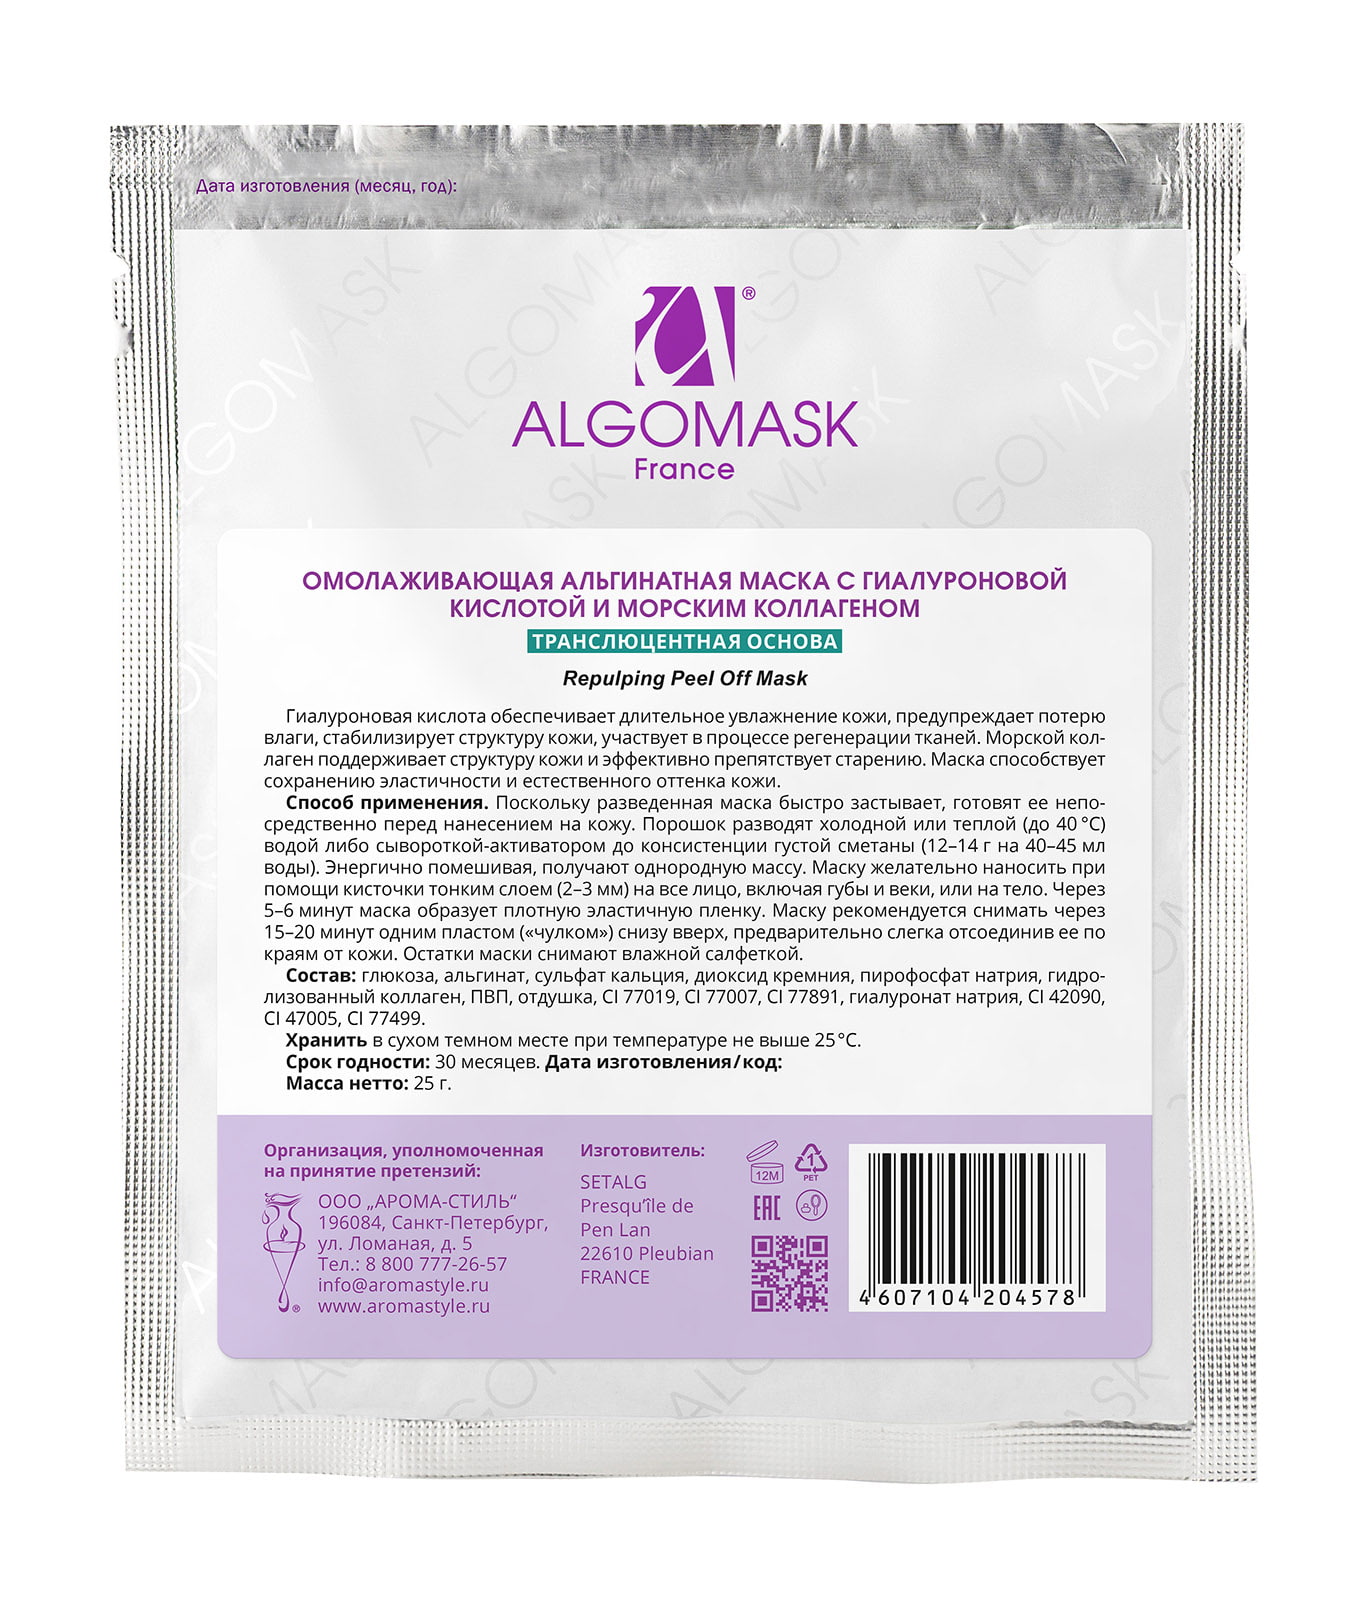 Омолаживающая альгинатная маска с гиалуроновой кислотой и морским коллагеном transluсent - 25 г